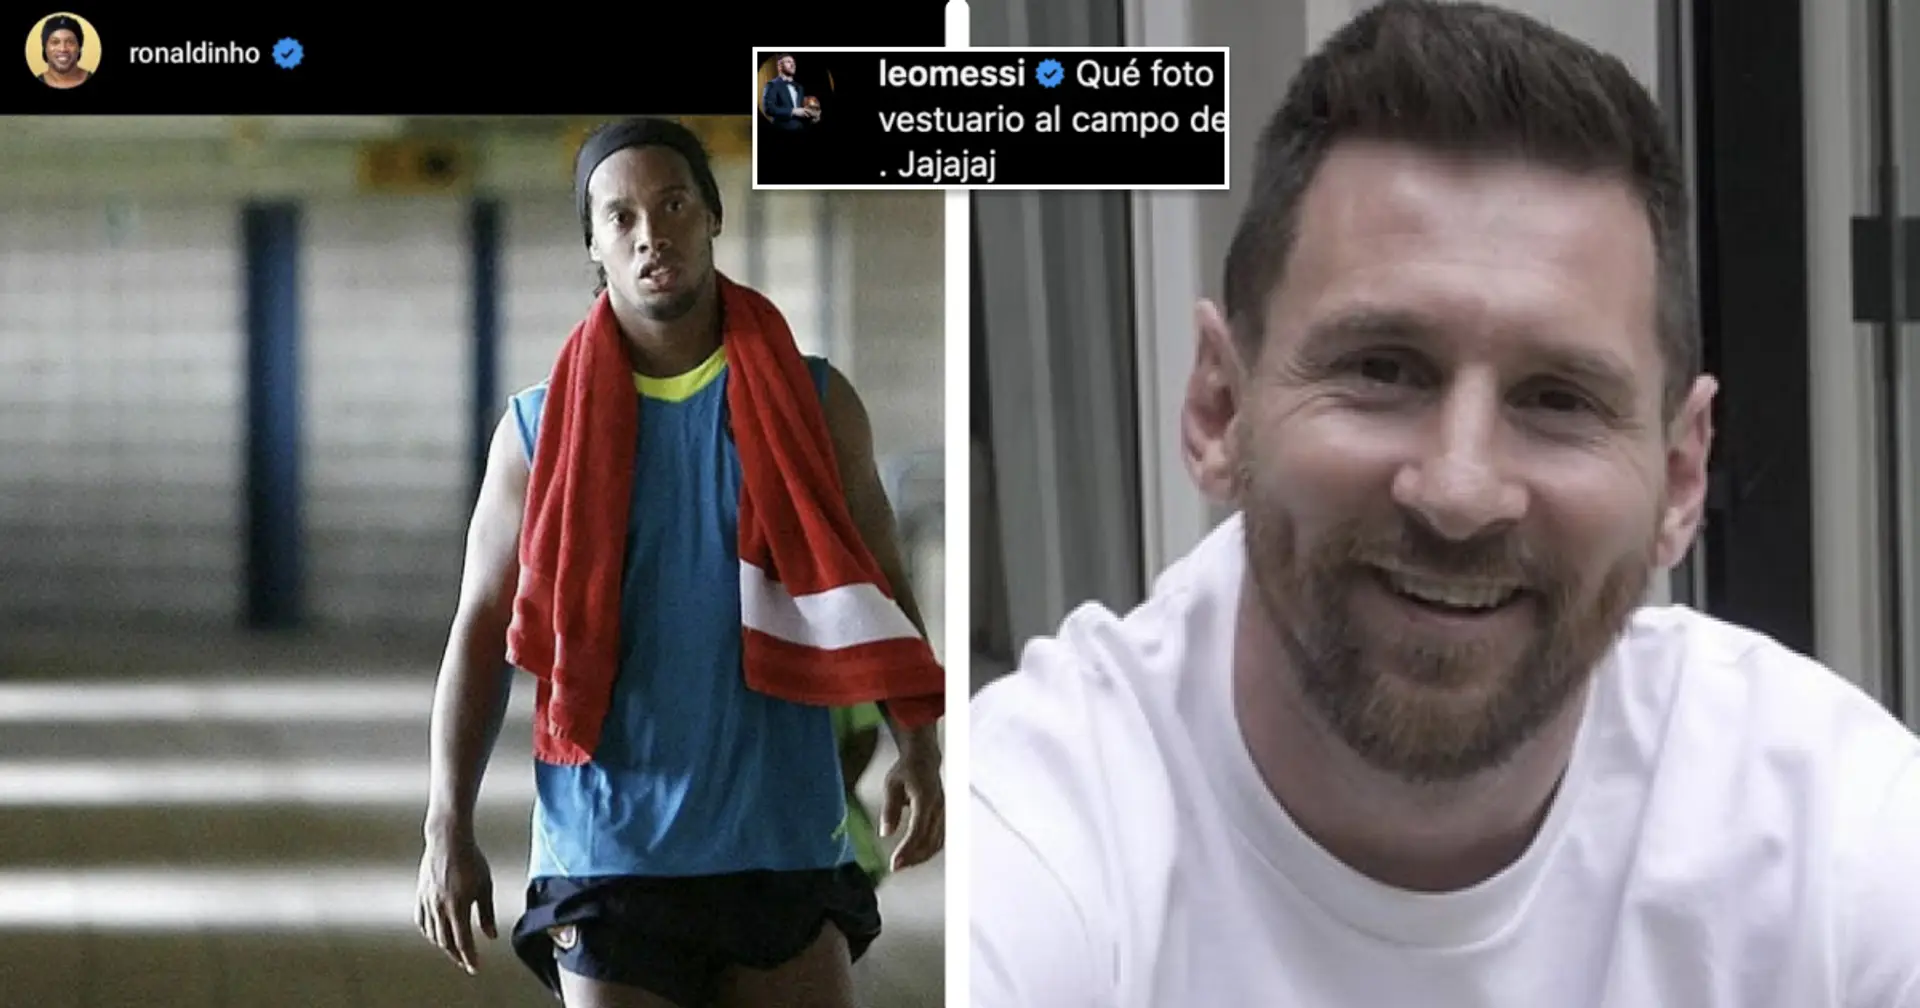 "Hahahaha": Messi commente la publication Instagram de Ronaldinho